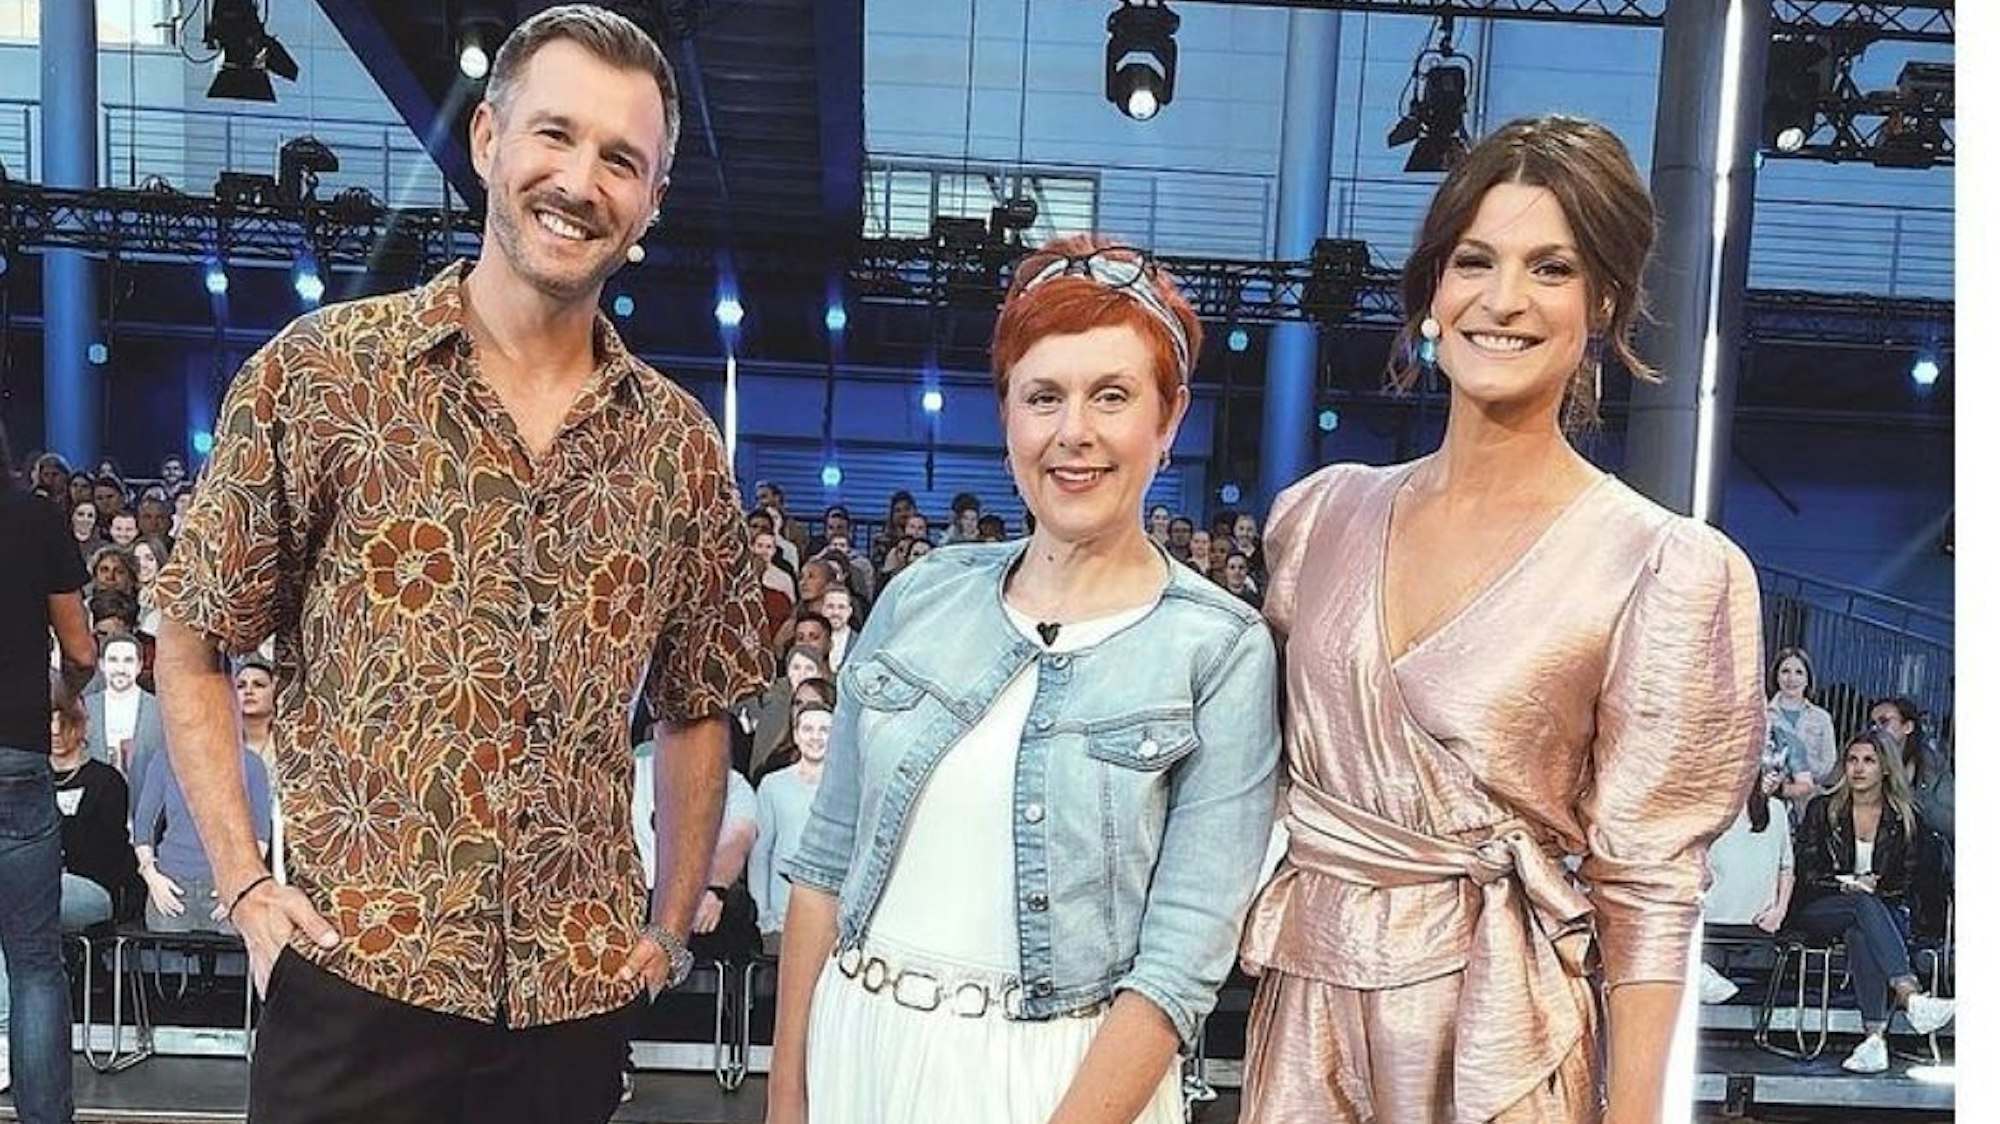 Iris Abel (m.), hier auf einem Foto mit Jochen Schropp (l.) und Marlene Lufen (r.) von August 2021